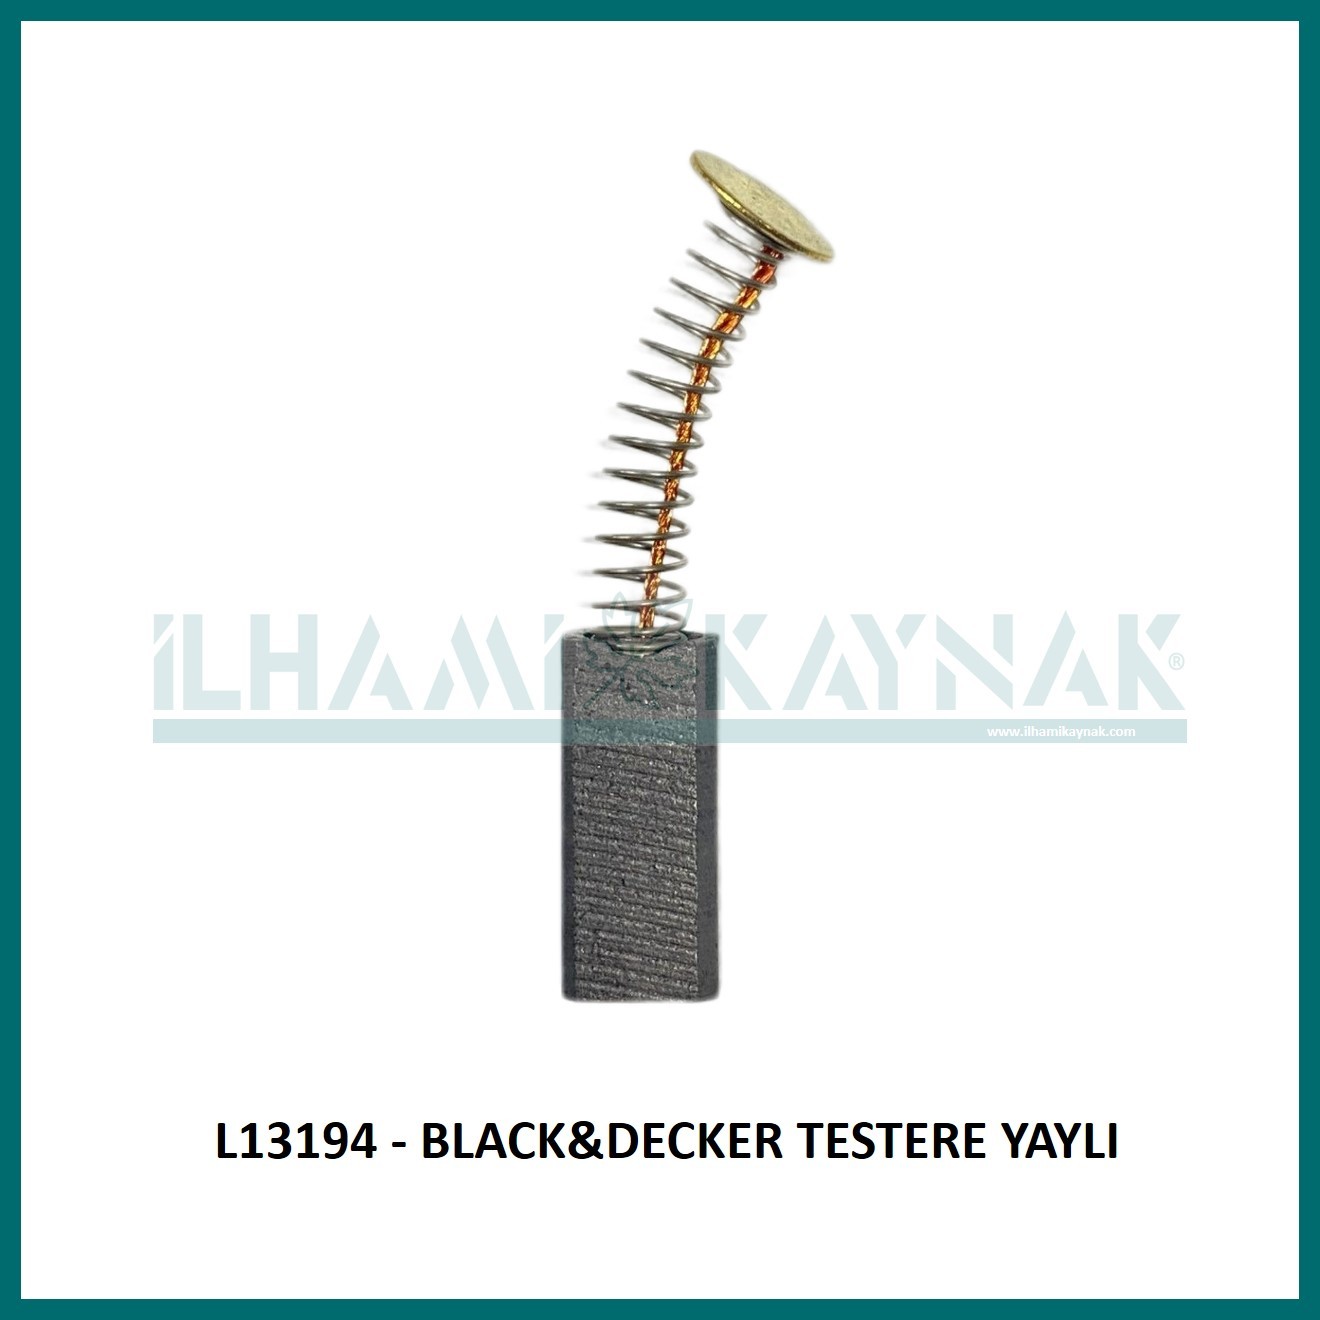 L13194 - BLACK&DECKER TESTERE YAYLI -  6*8*18 mm - Minimum Satın Alım: 10 Adet